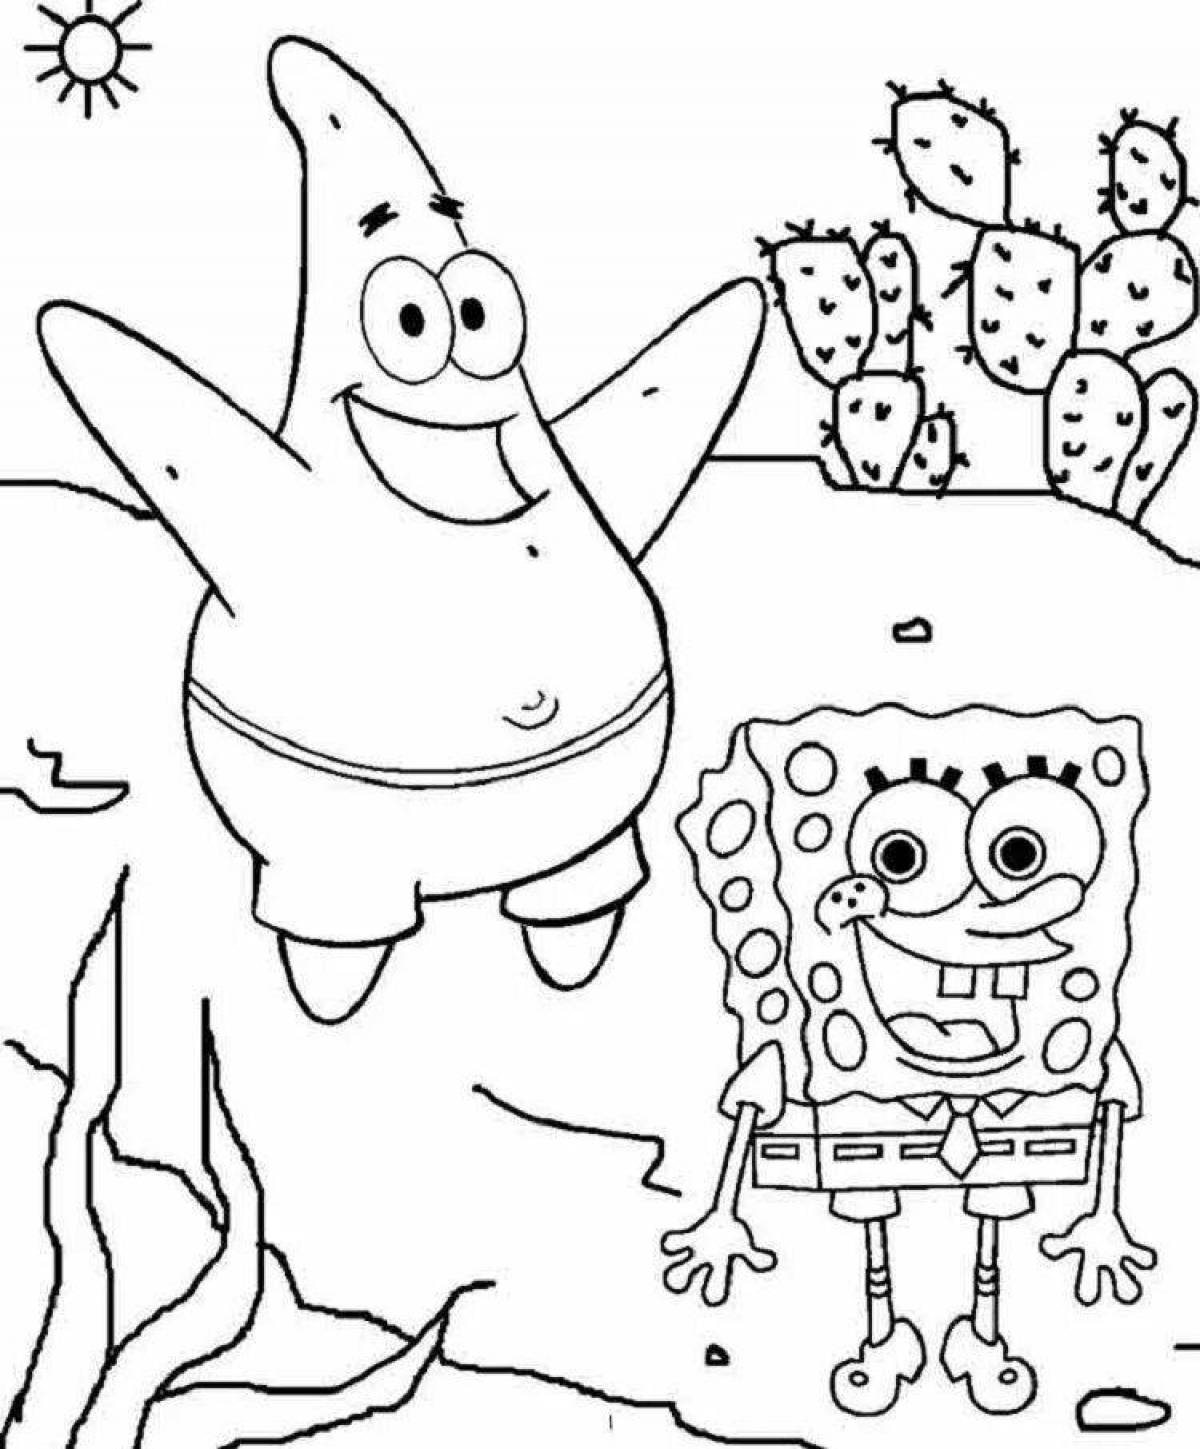 Spongebob by numbers #1